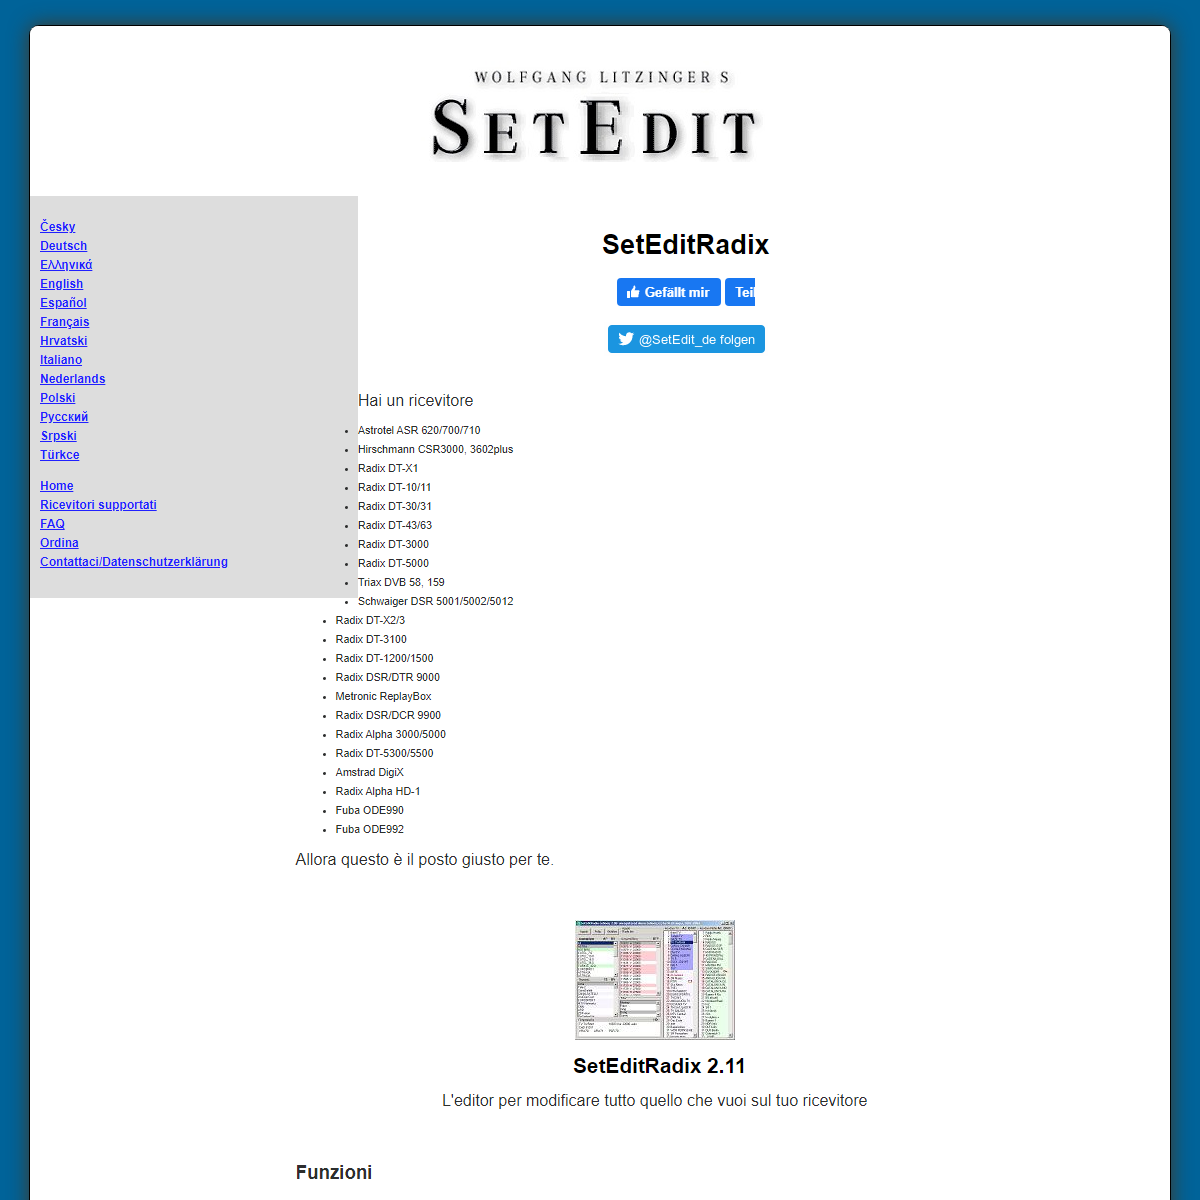 A complete backup of https://www.setedit.de/SetEdit.php?spr=6&Editor=26